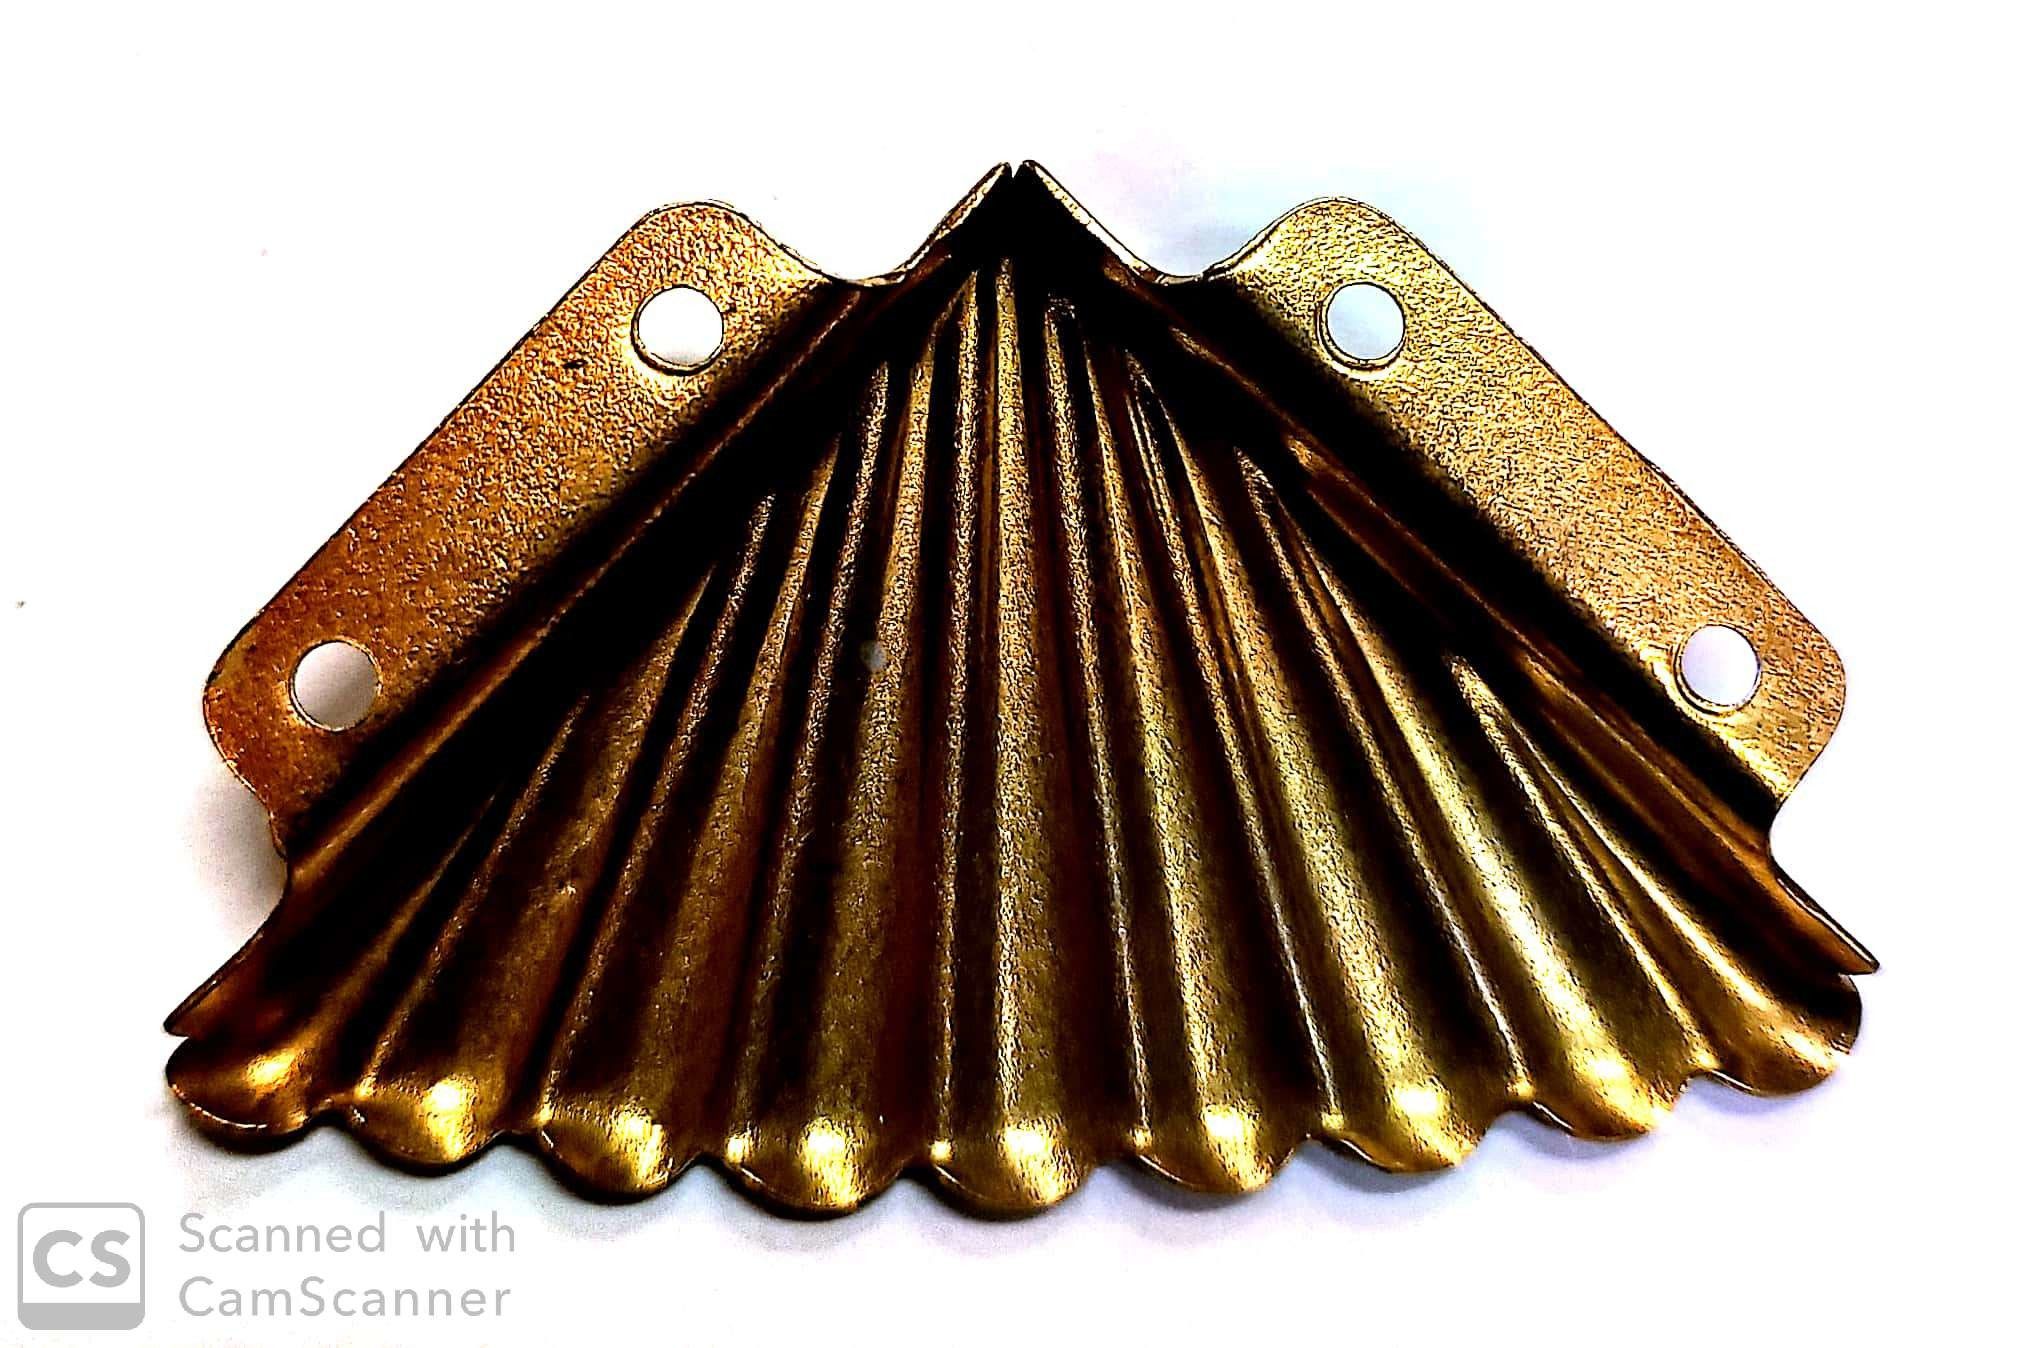 Reggispecchi a ventaglio angolare mm 55 in ferro ottonato